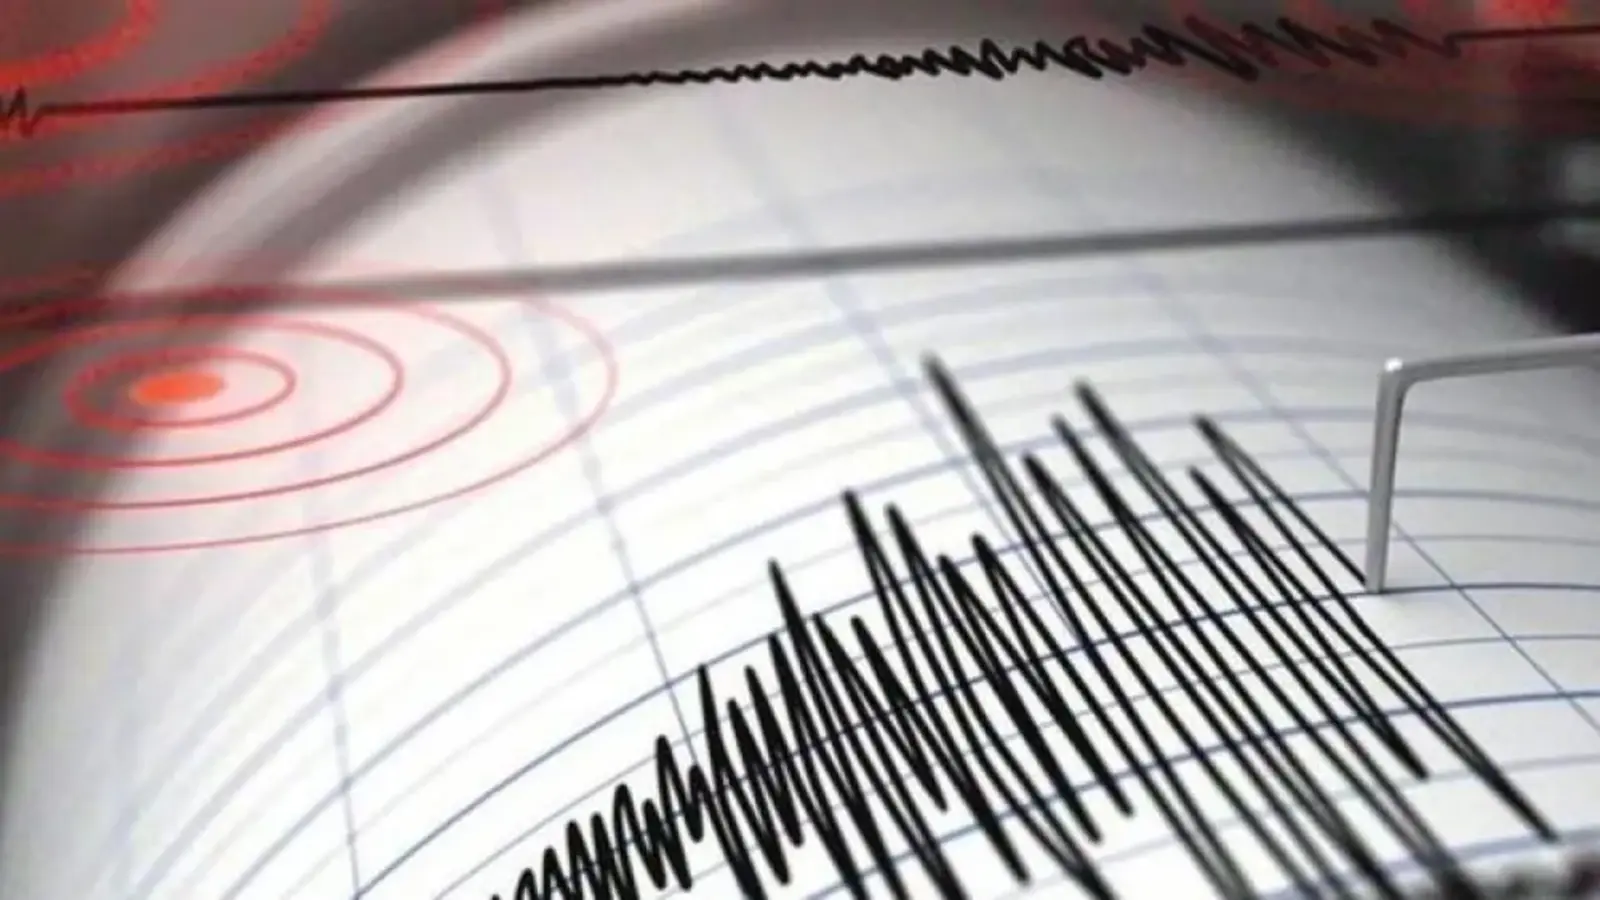 Kahramanmaraş’ta 4.0 büyüklüğünde deprem